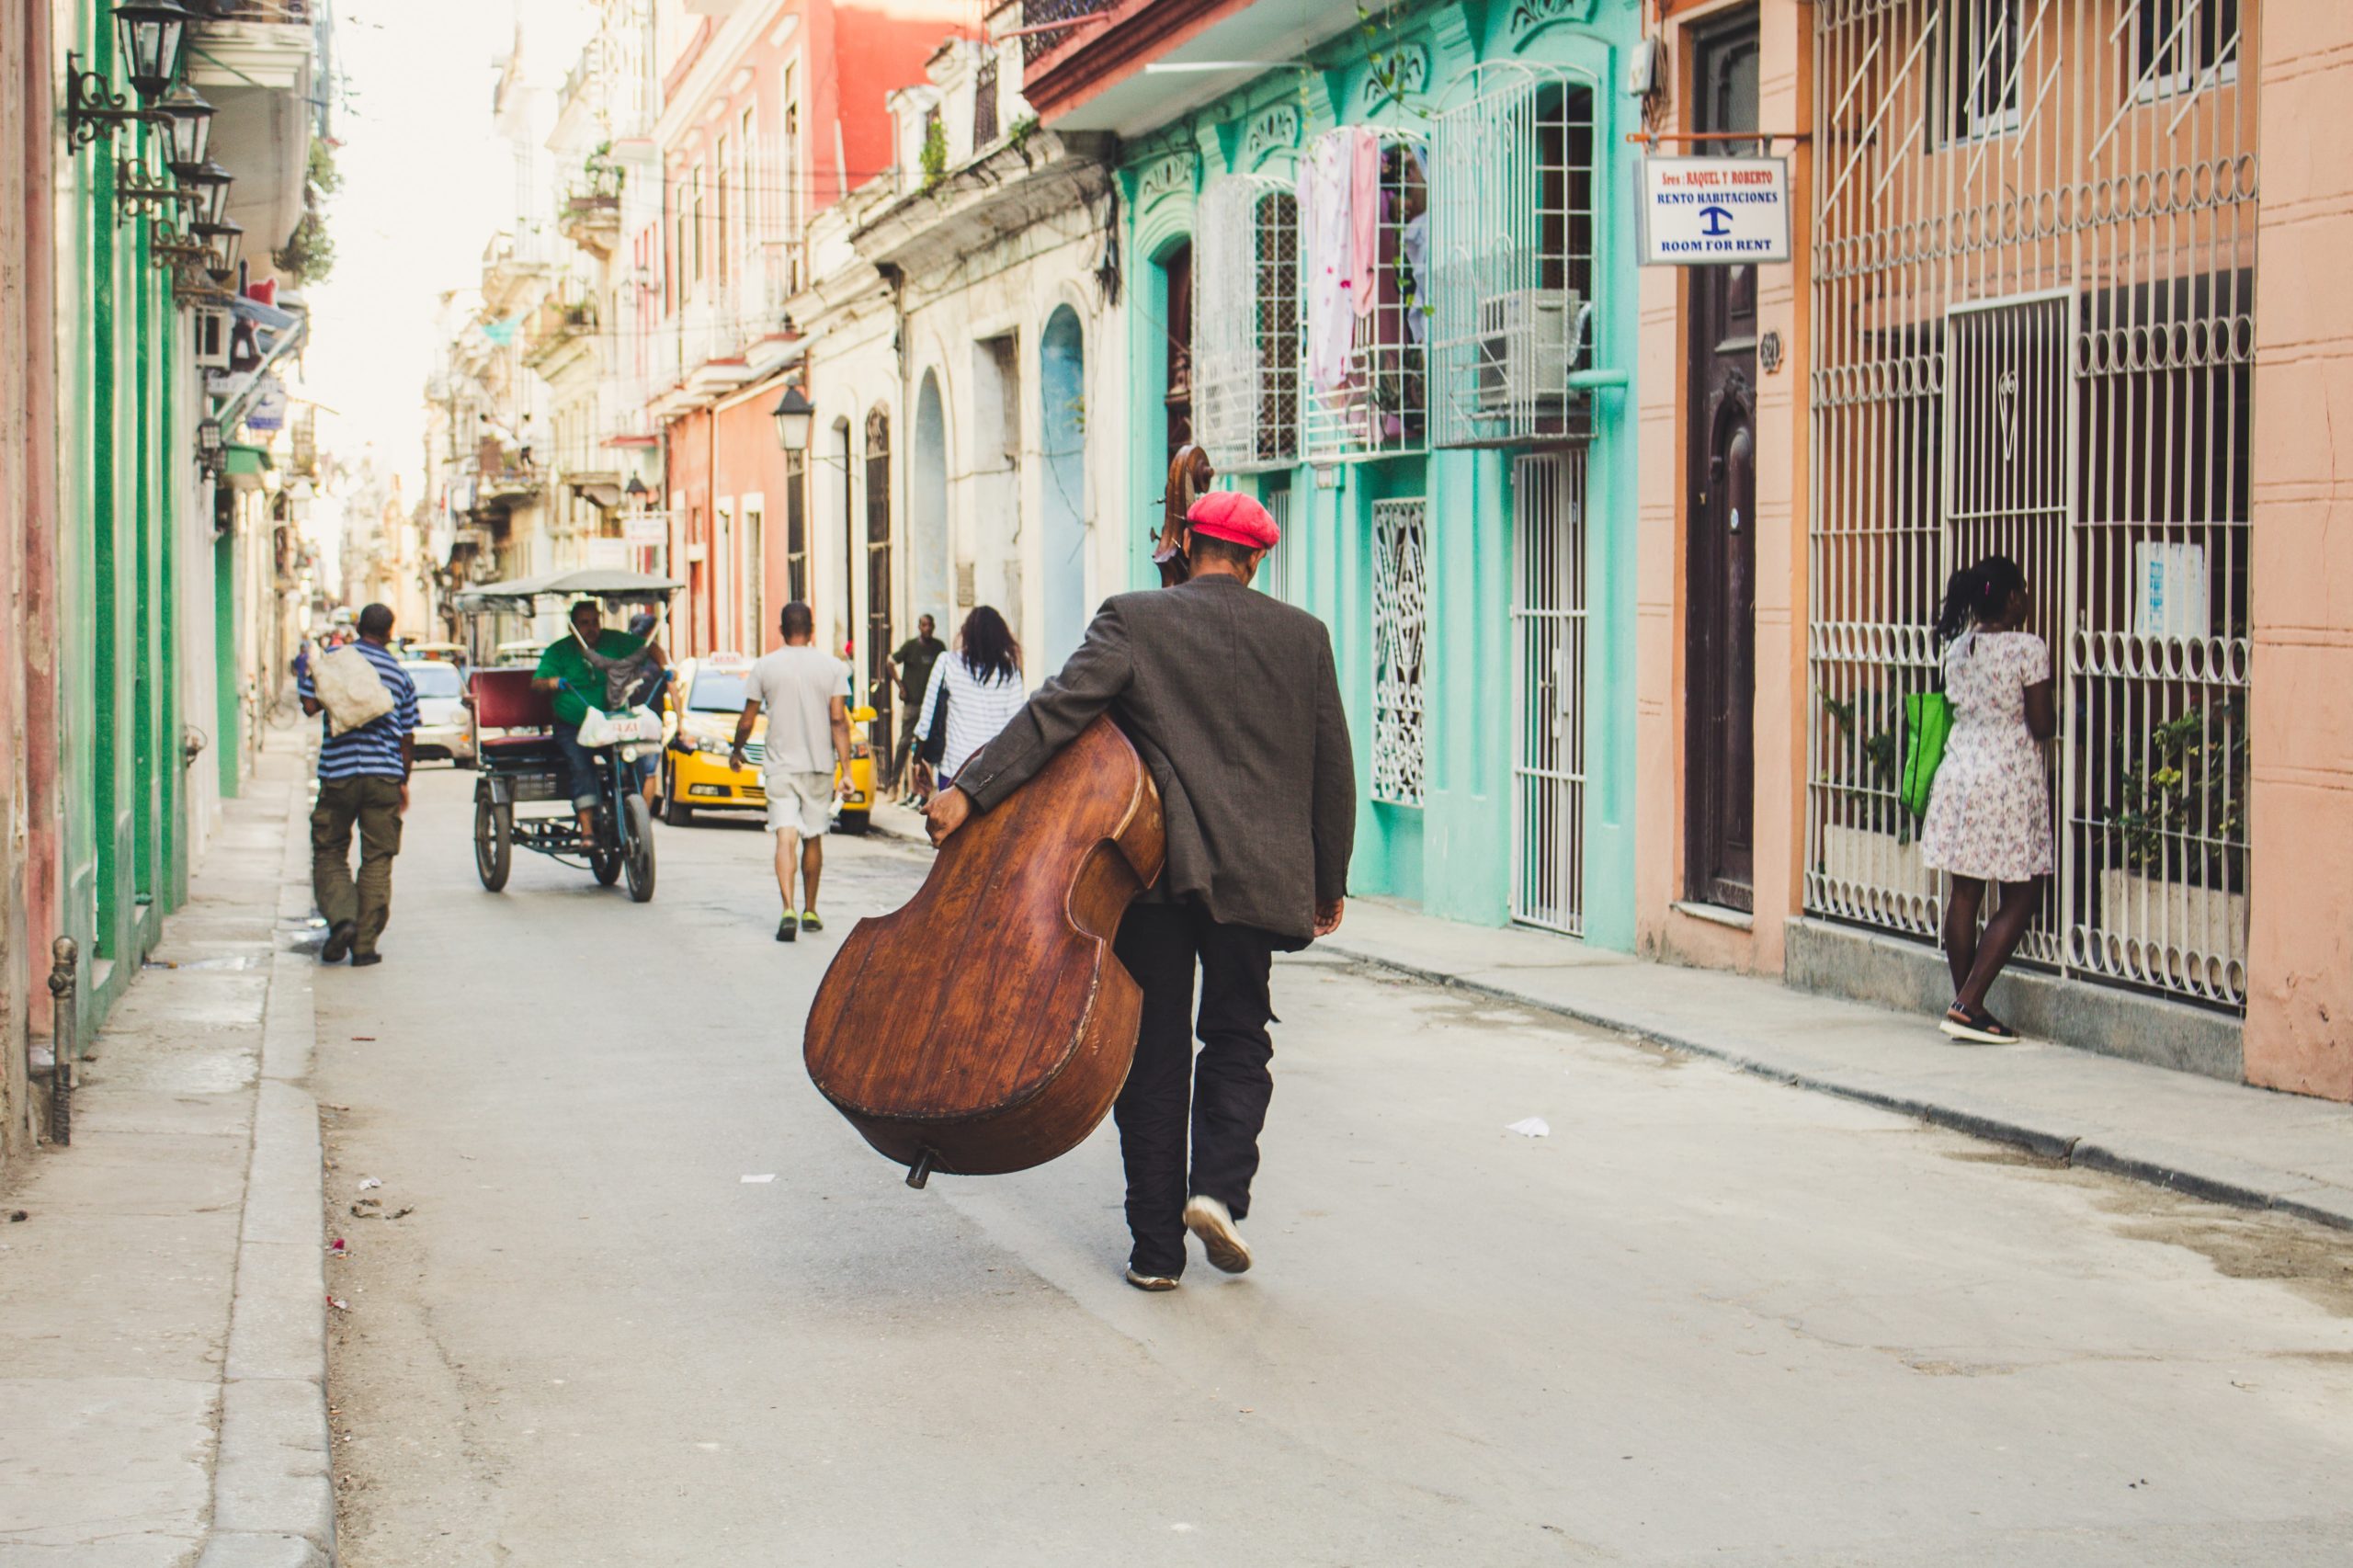 Puisje obtenir une carte de tourisme à l'arrivée à Cuba ? Visa Cuba